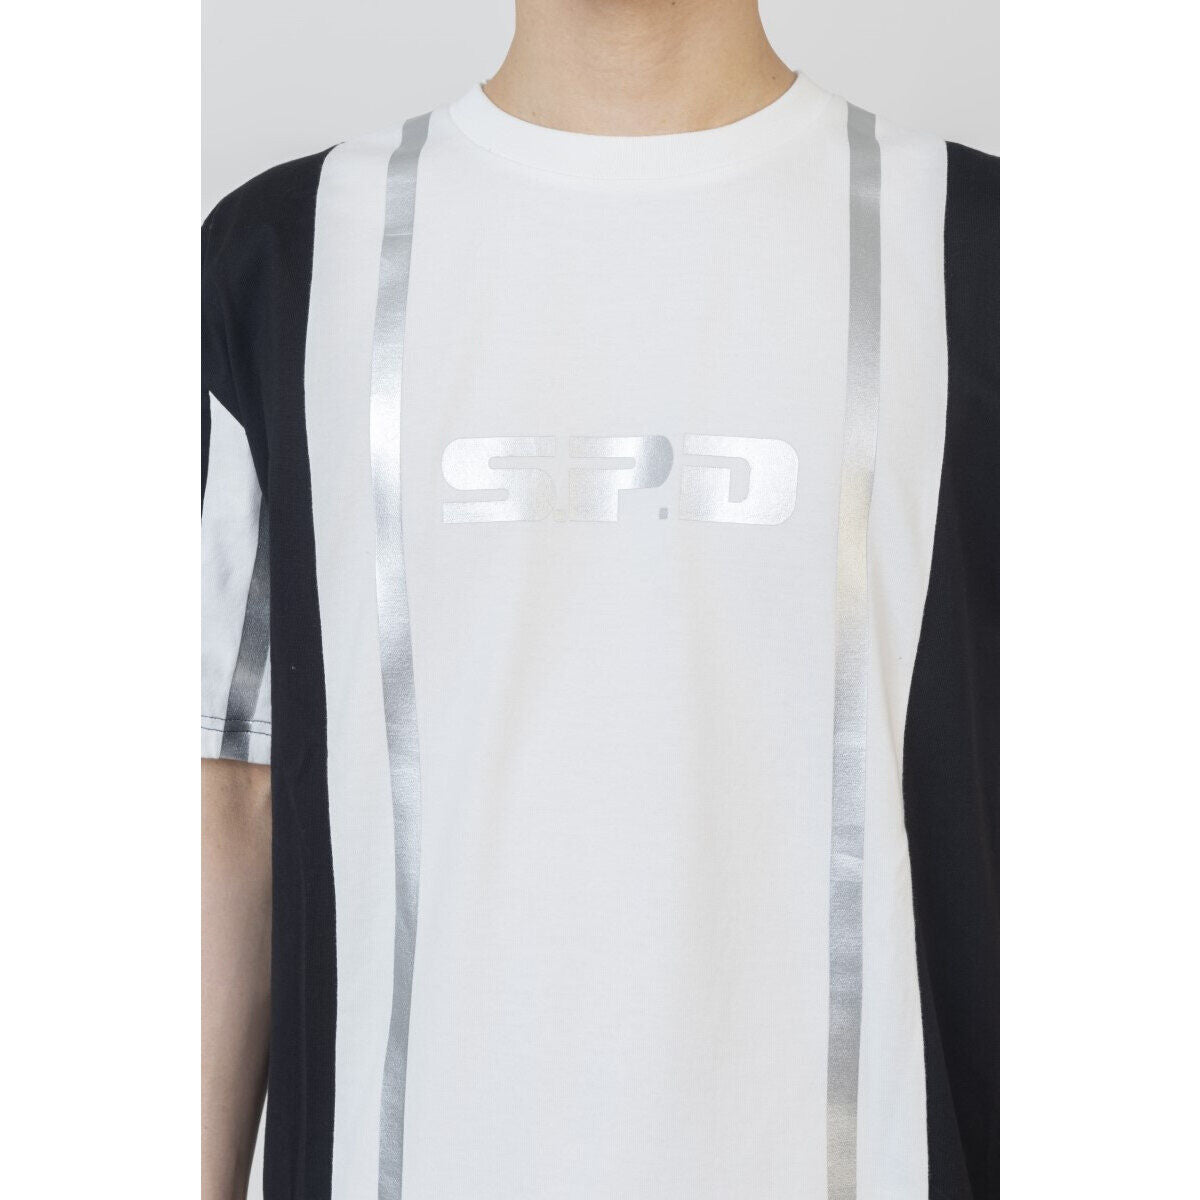 [PREORDER] Dekaranger S.P.D. Squad Style T-Shirt